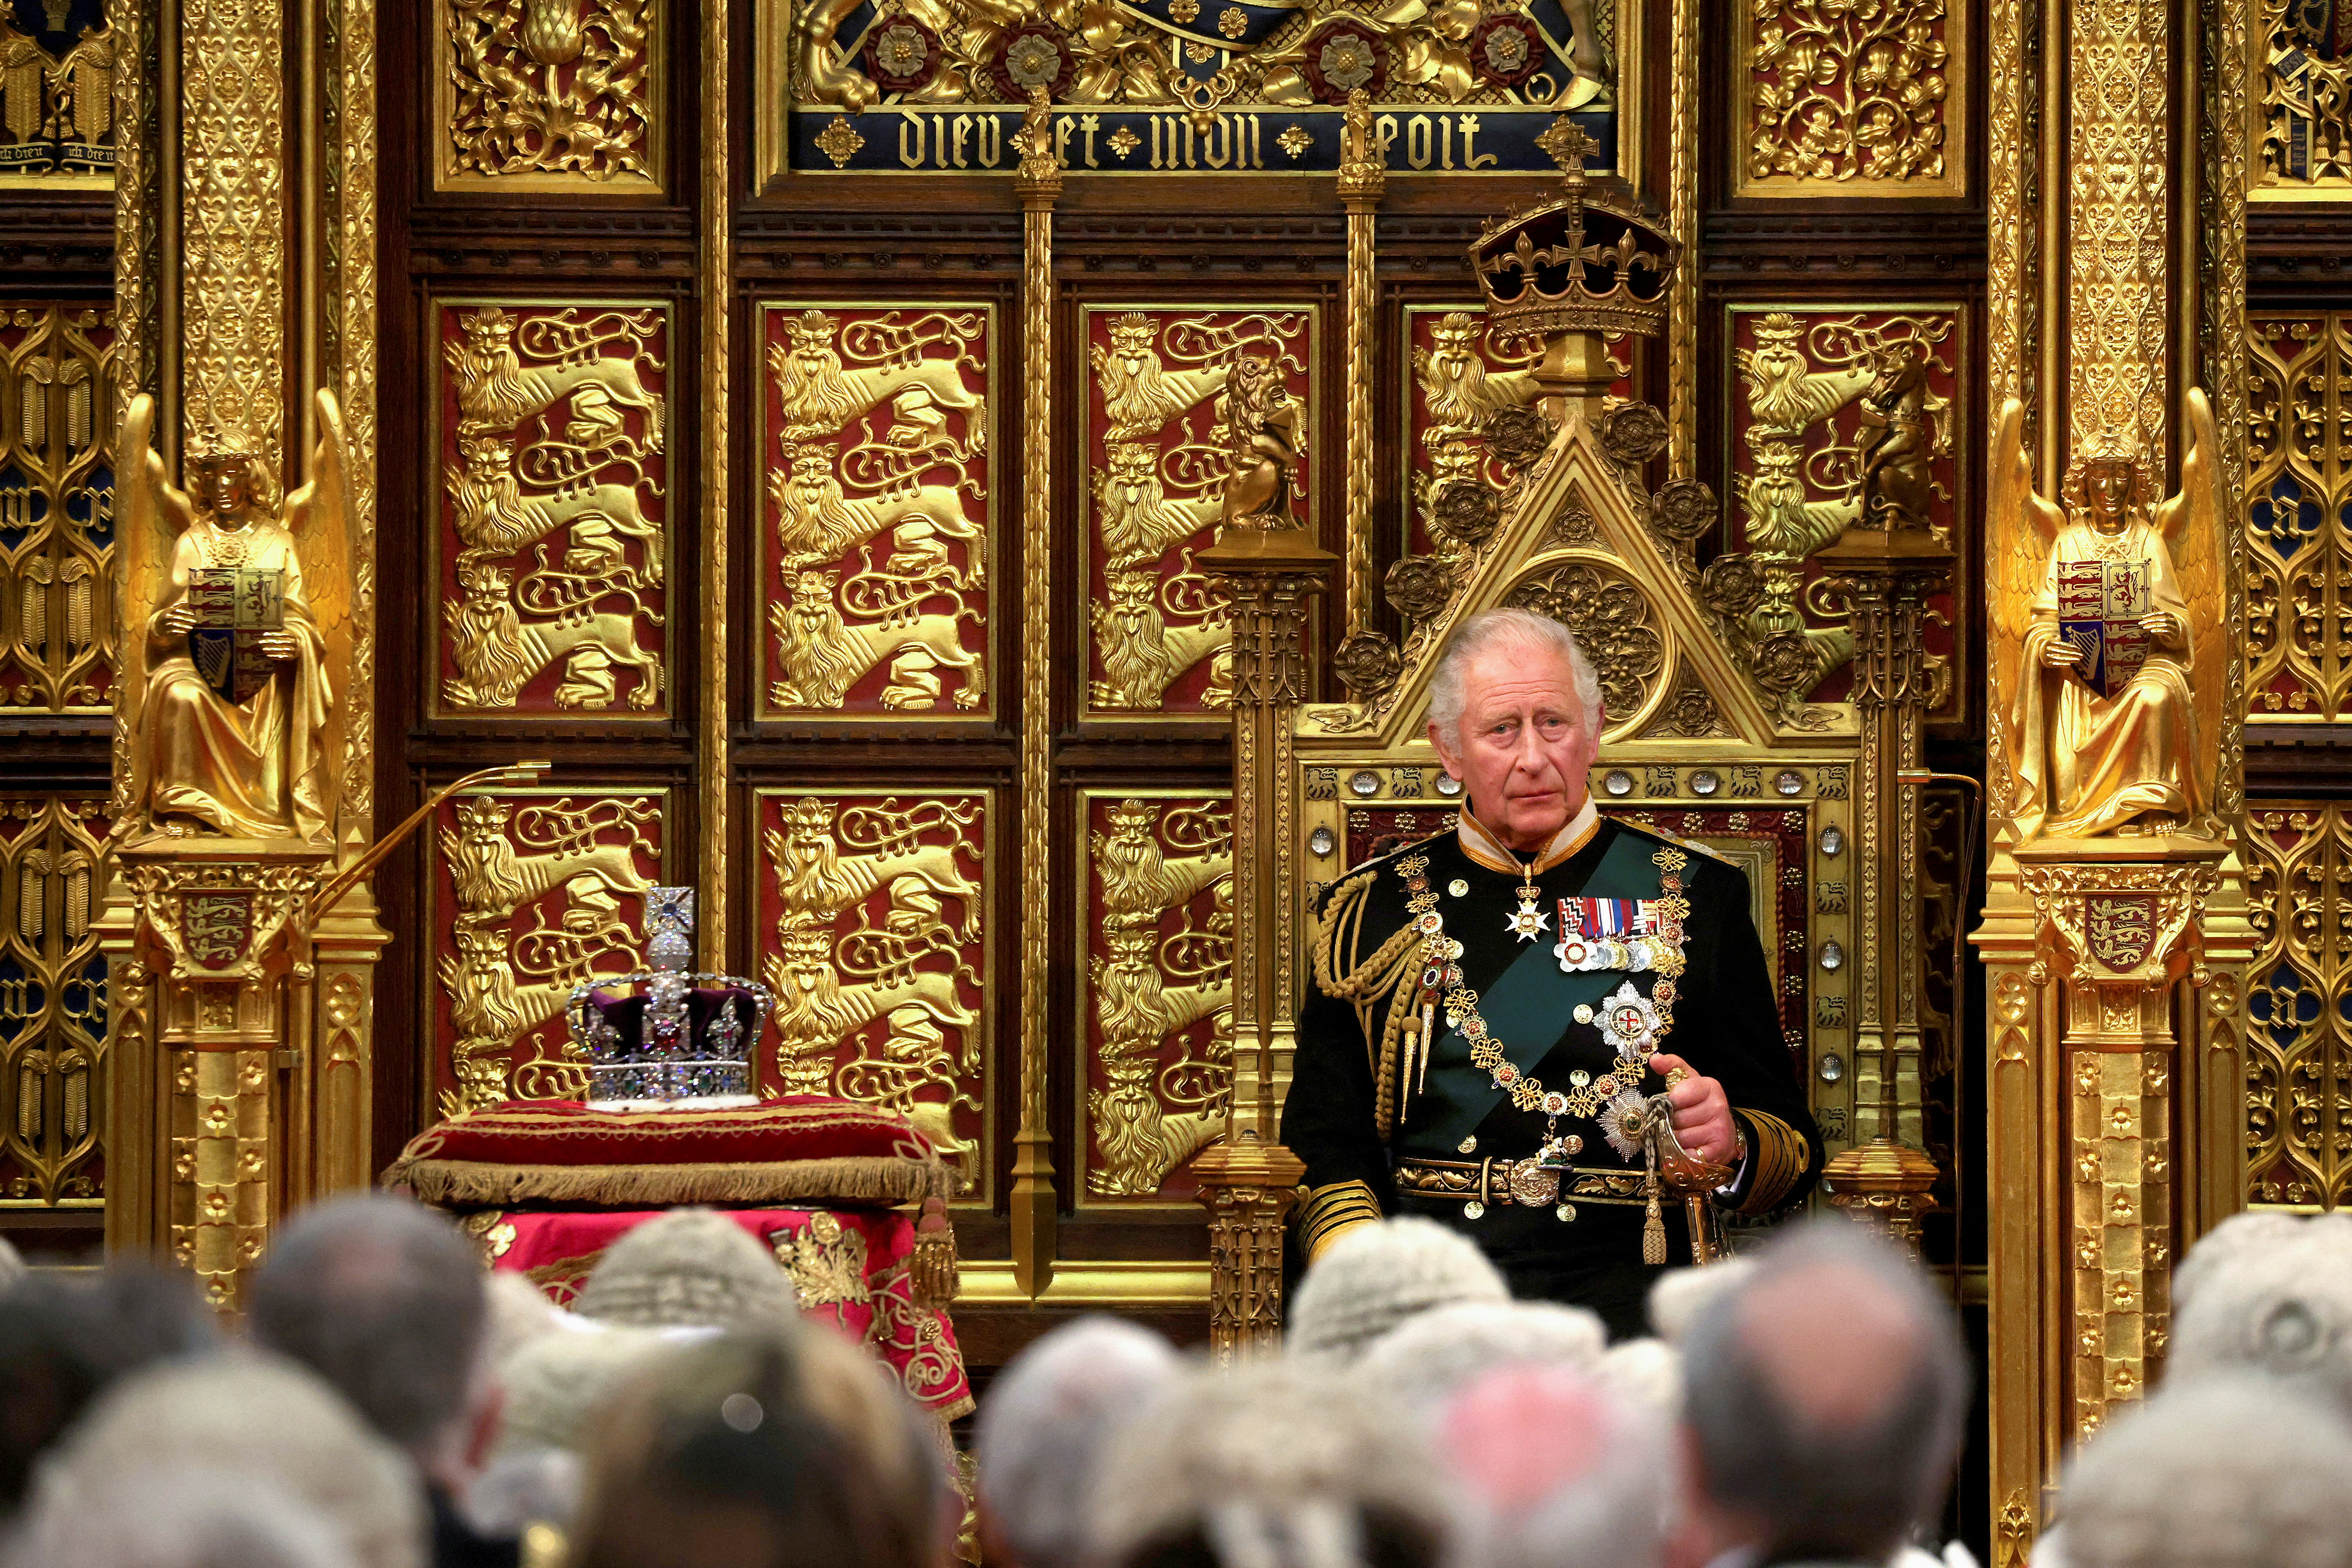 Tras una fanfarria de trompetistas, una proclamación pública declarará a Carlos como el nuevo rey. Esto se realizará desde un balcón en el Friary Court del palacio de St James en Londres, a través de un funcionario conocido el Rey de Armas Principal de la Jarretera.